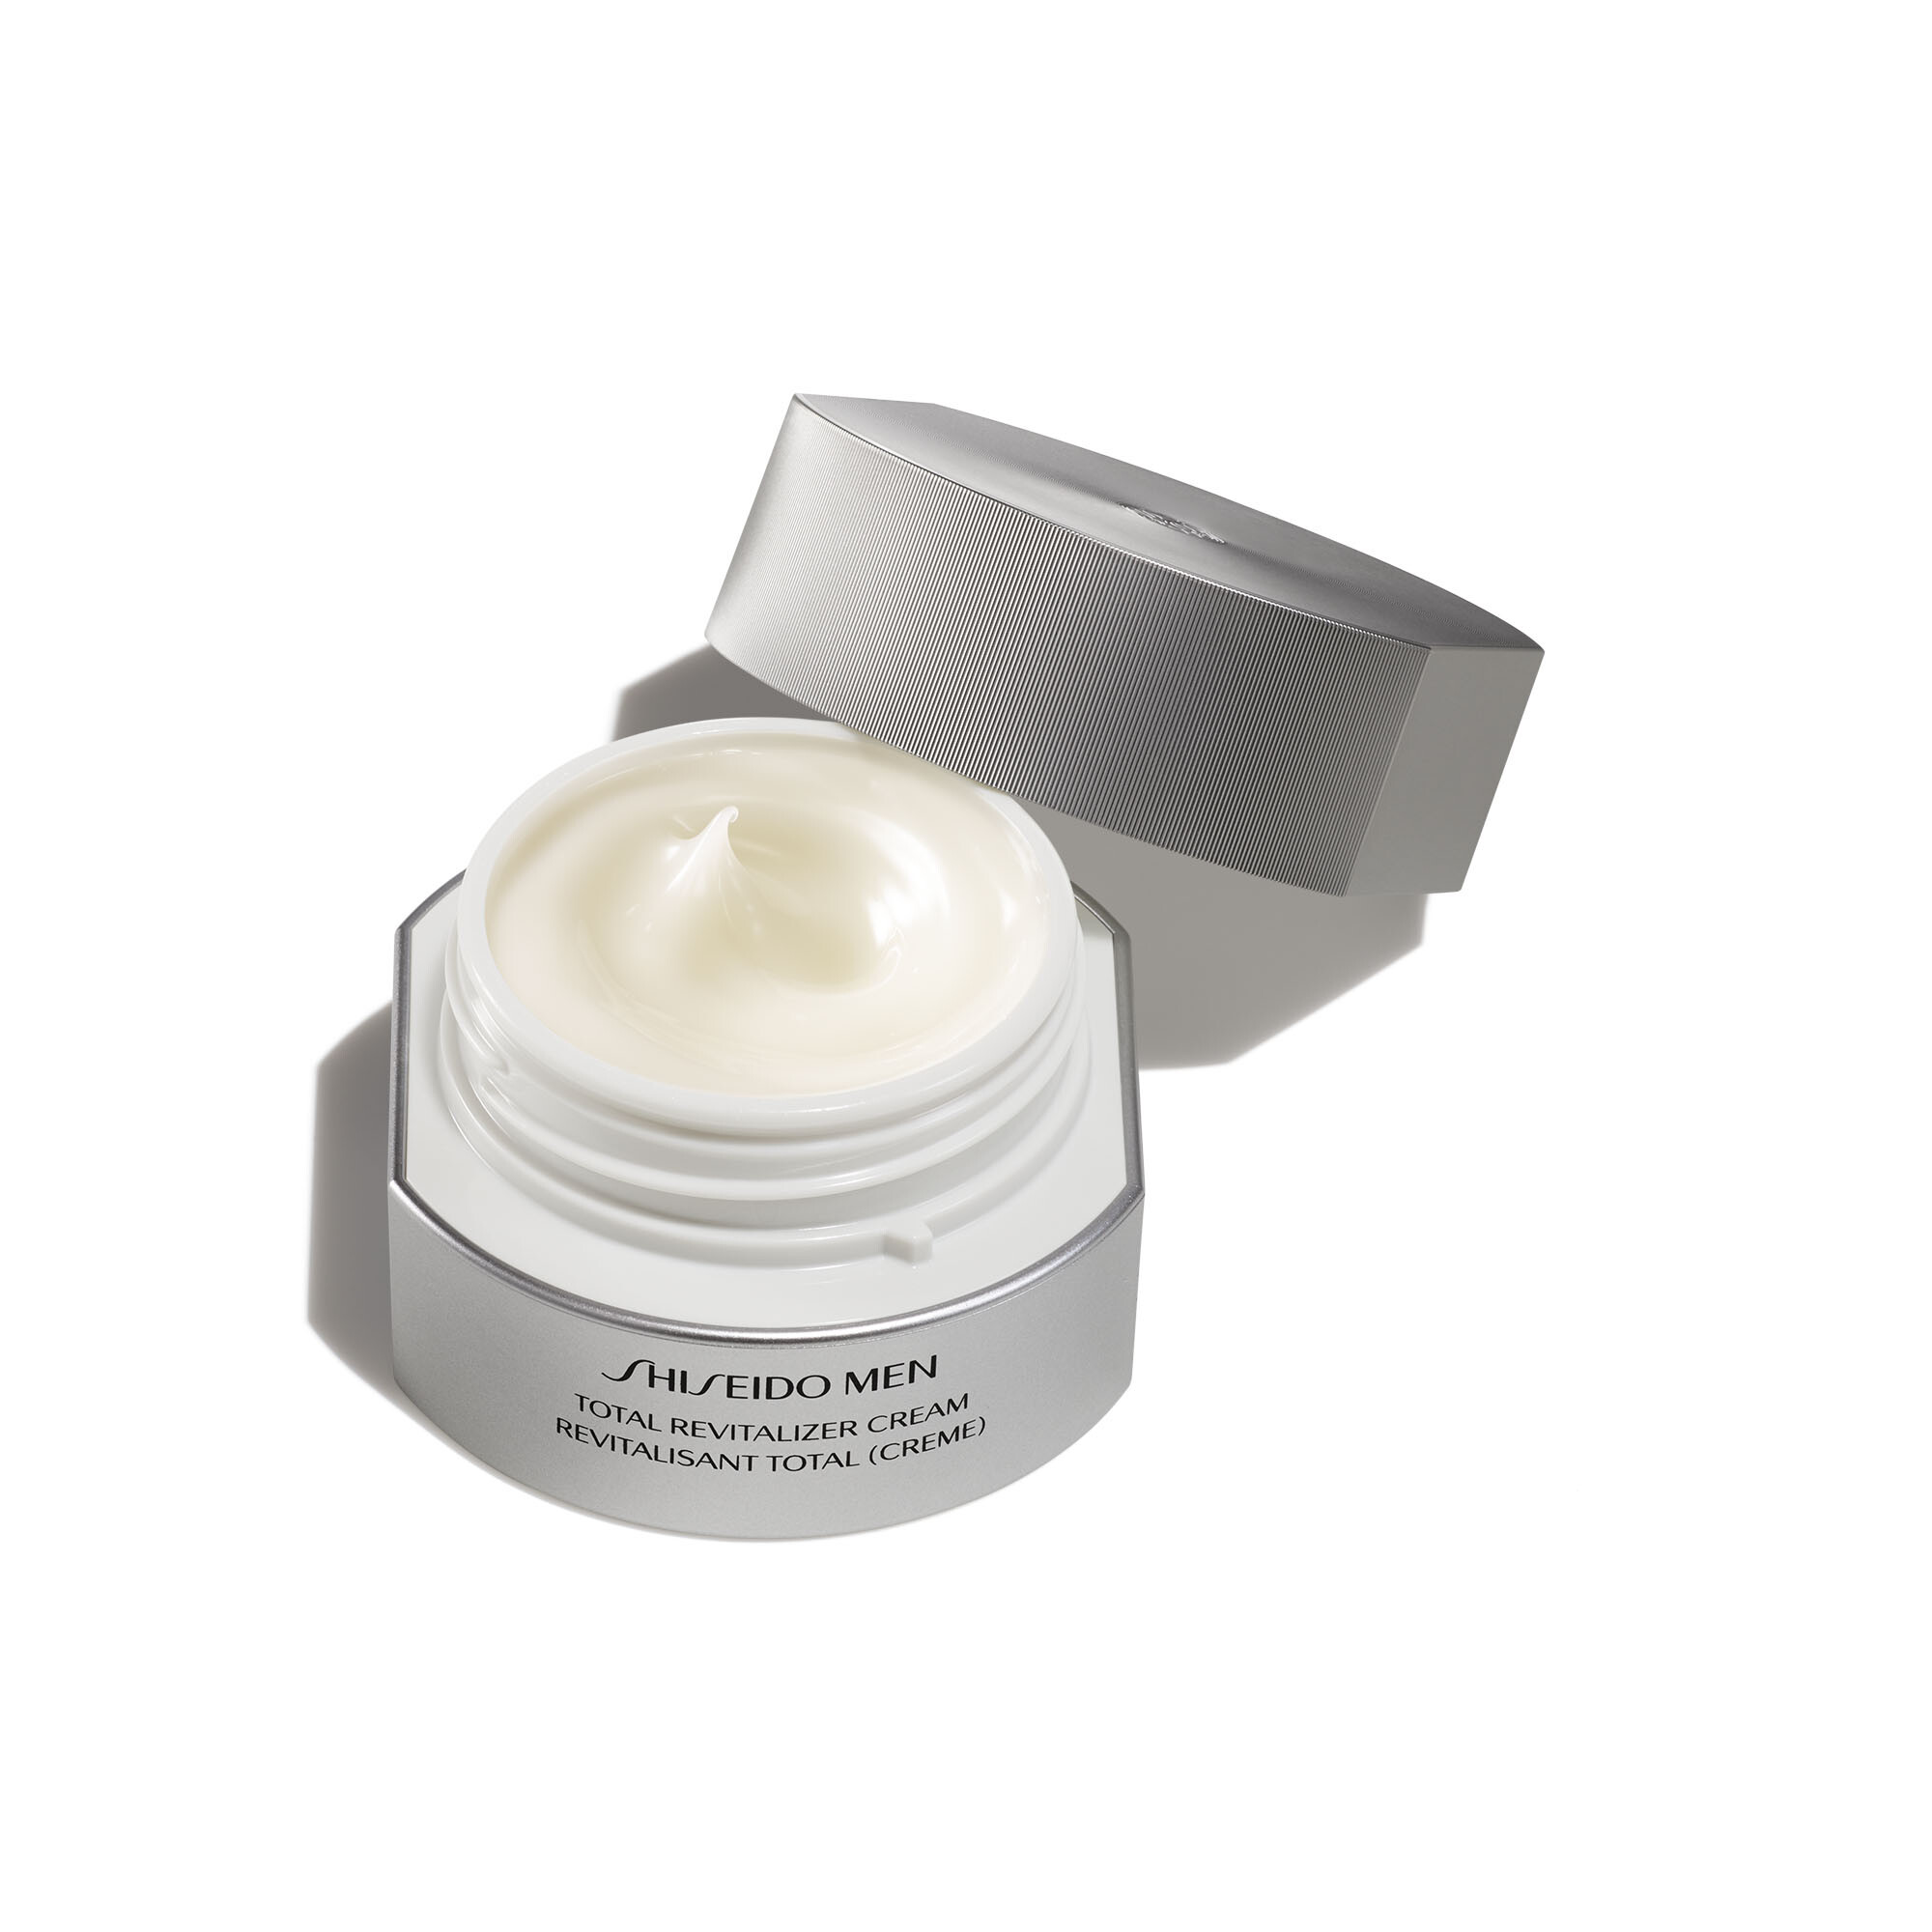 Shiseido Shiseido Men Total Revitalizer Cream 50ml bestellen